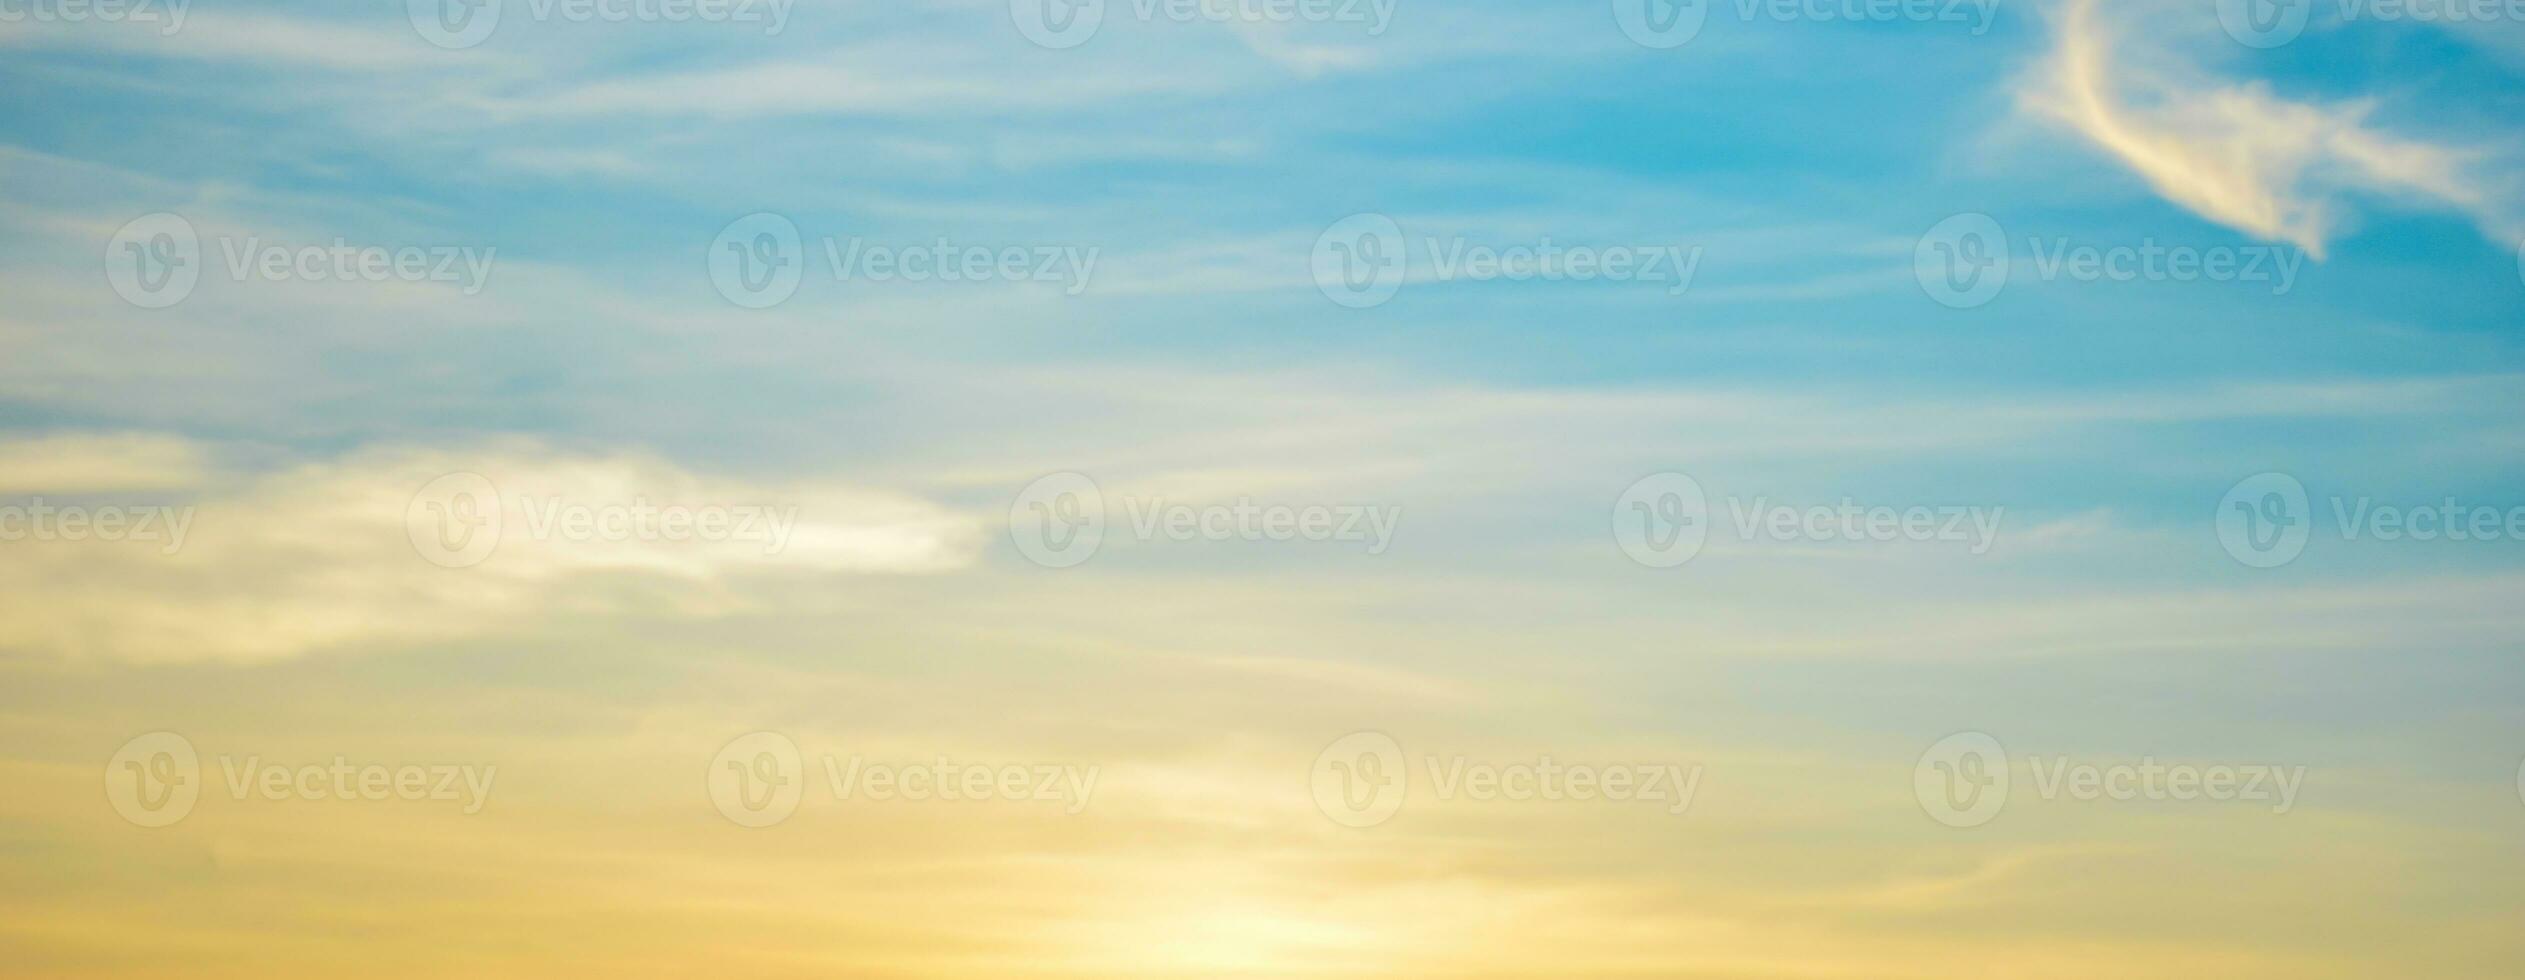 Abend Himmel und Sonnenschein Natur Hintergrund foto